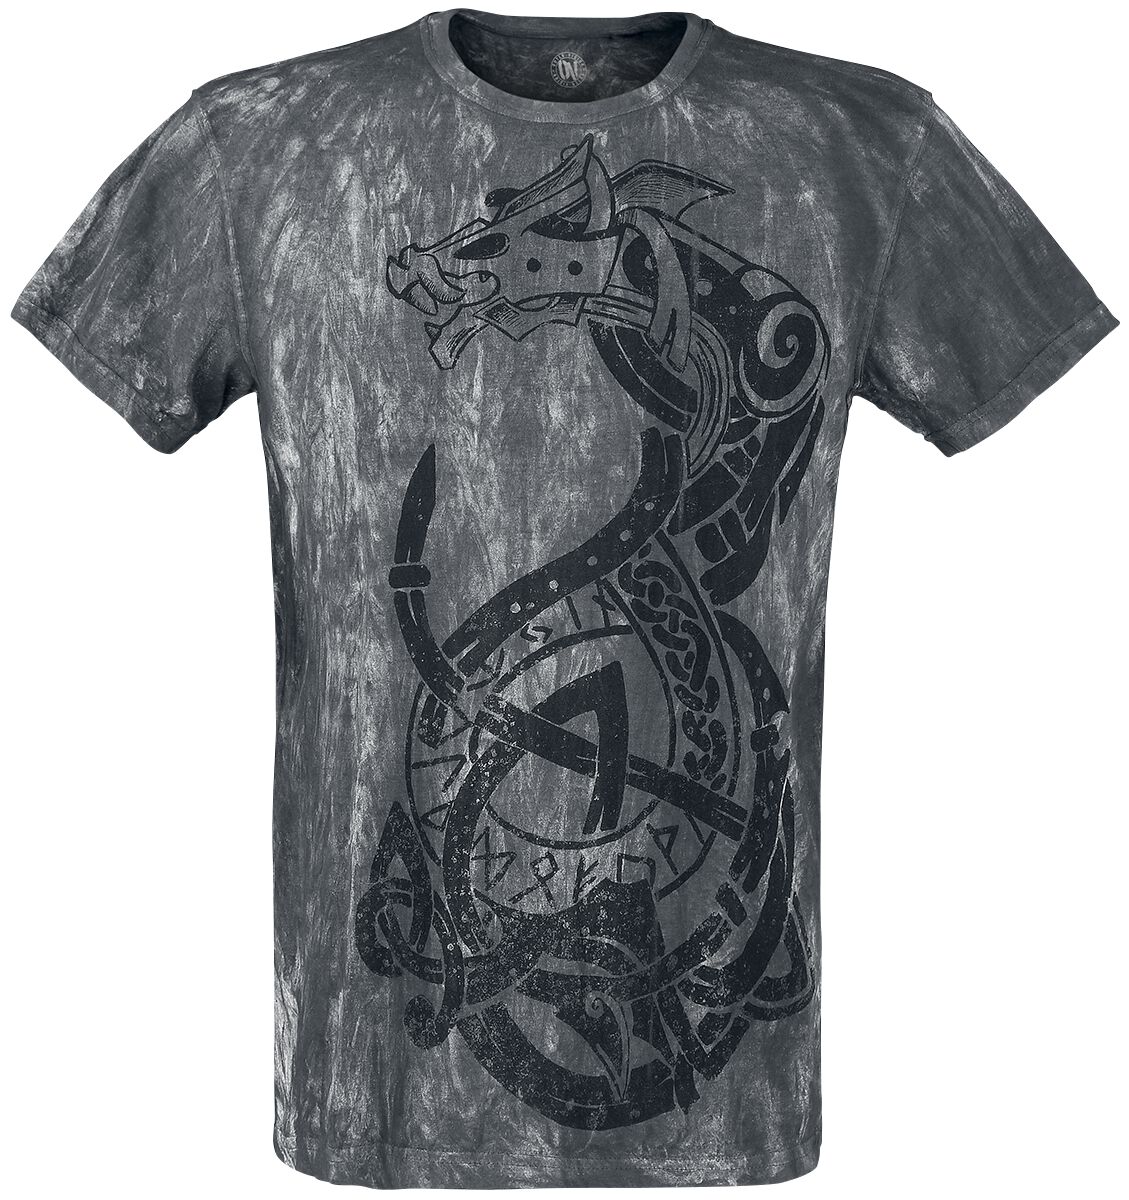 Outer Vision - Gothic T-Shirt - Viking Warrior - S bis 4XL - für Männer - Größe XXL - grau